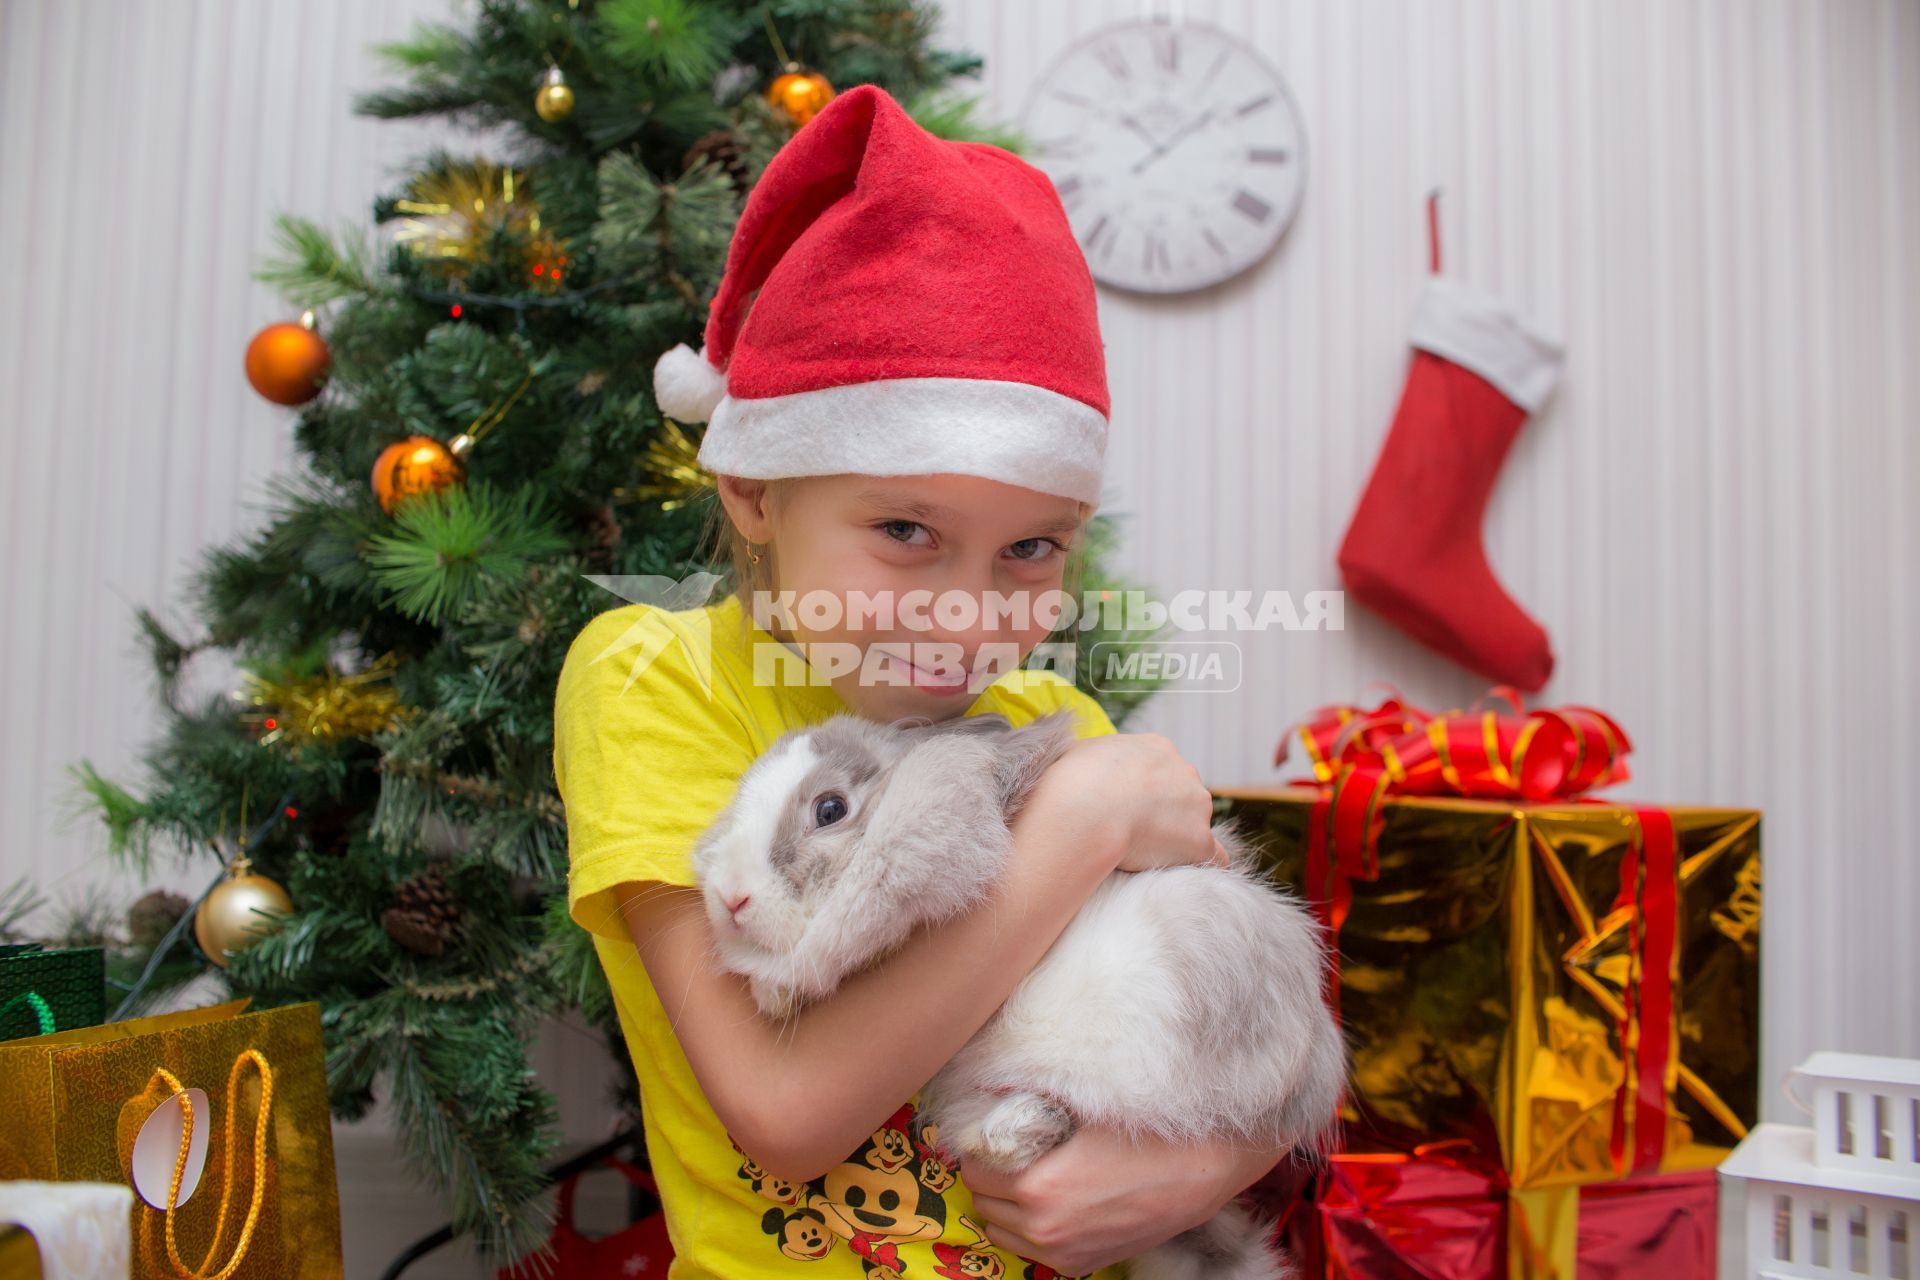 Челябинск. Девочка с кроликом  у новогодней елки.